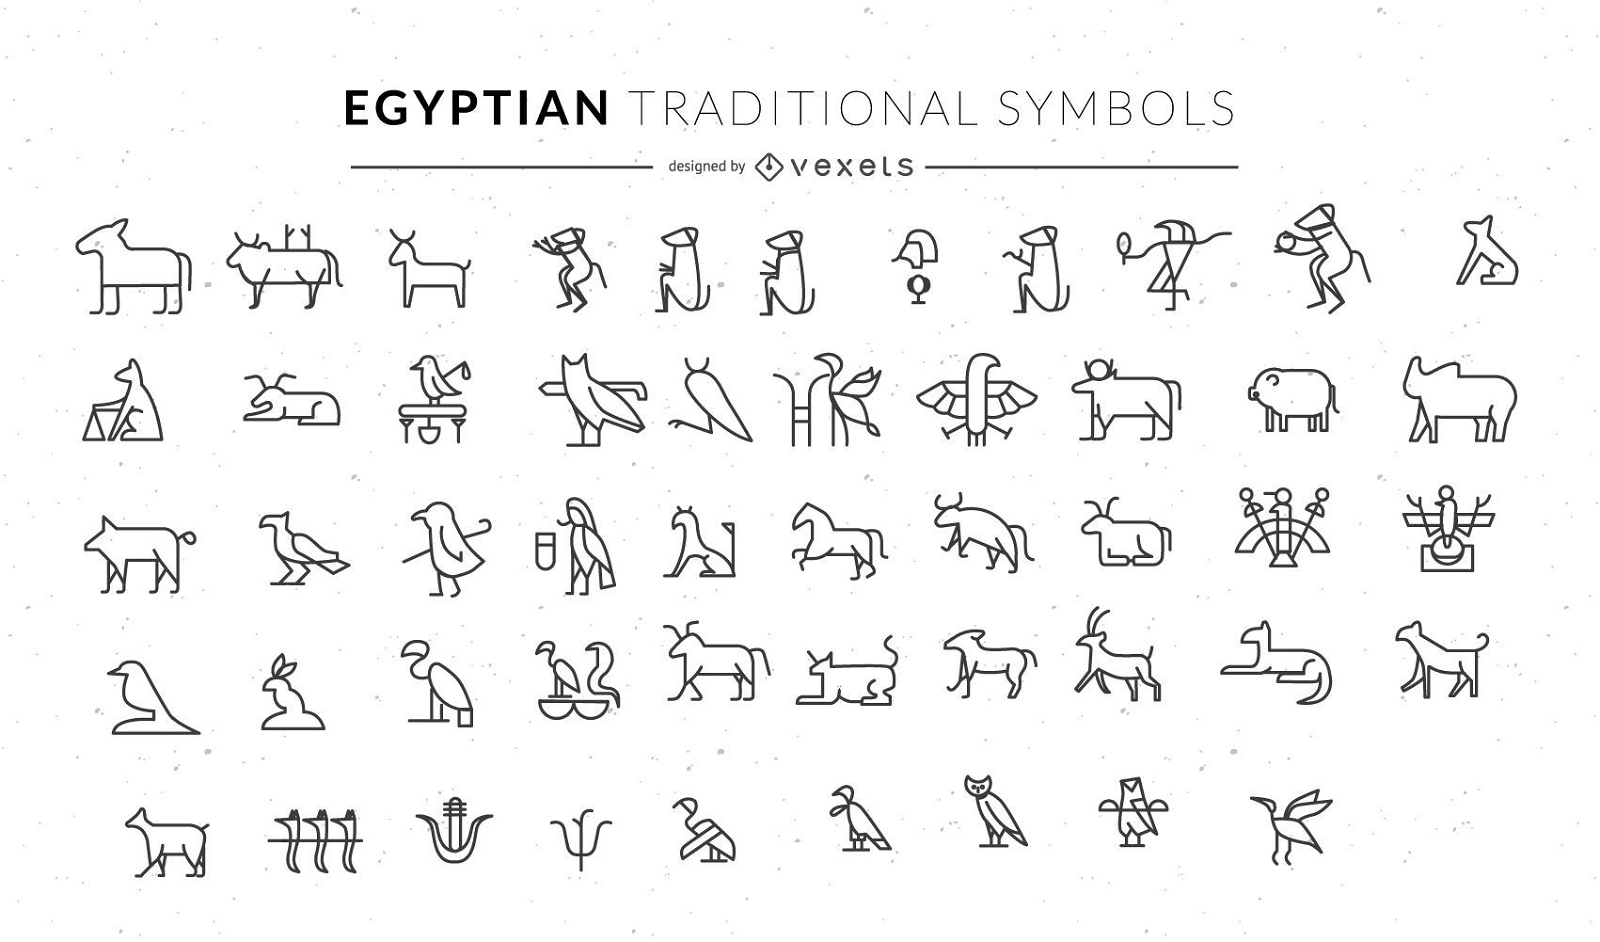 Ägyptische traditionelle Tiersymbole gesetzt